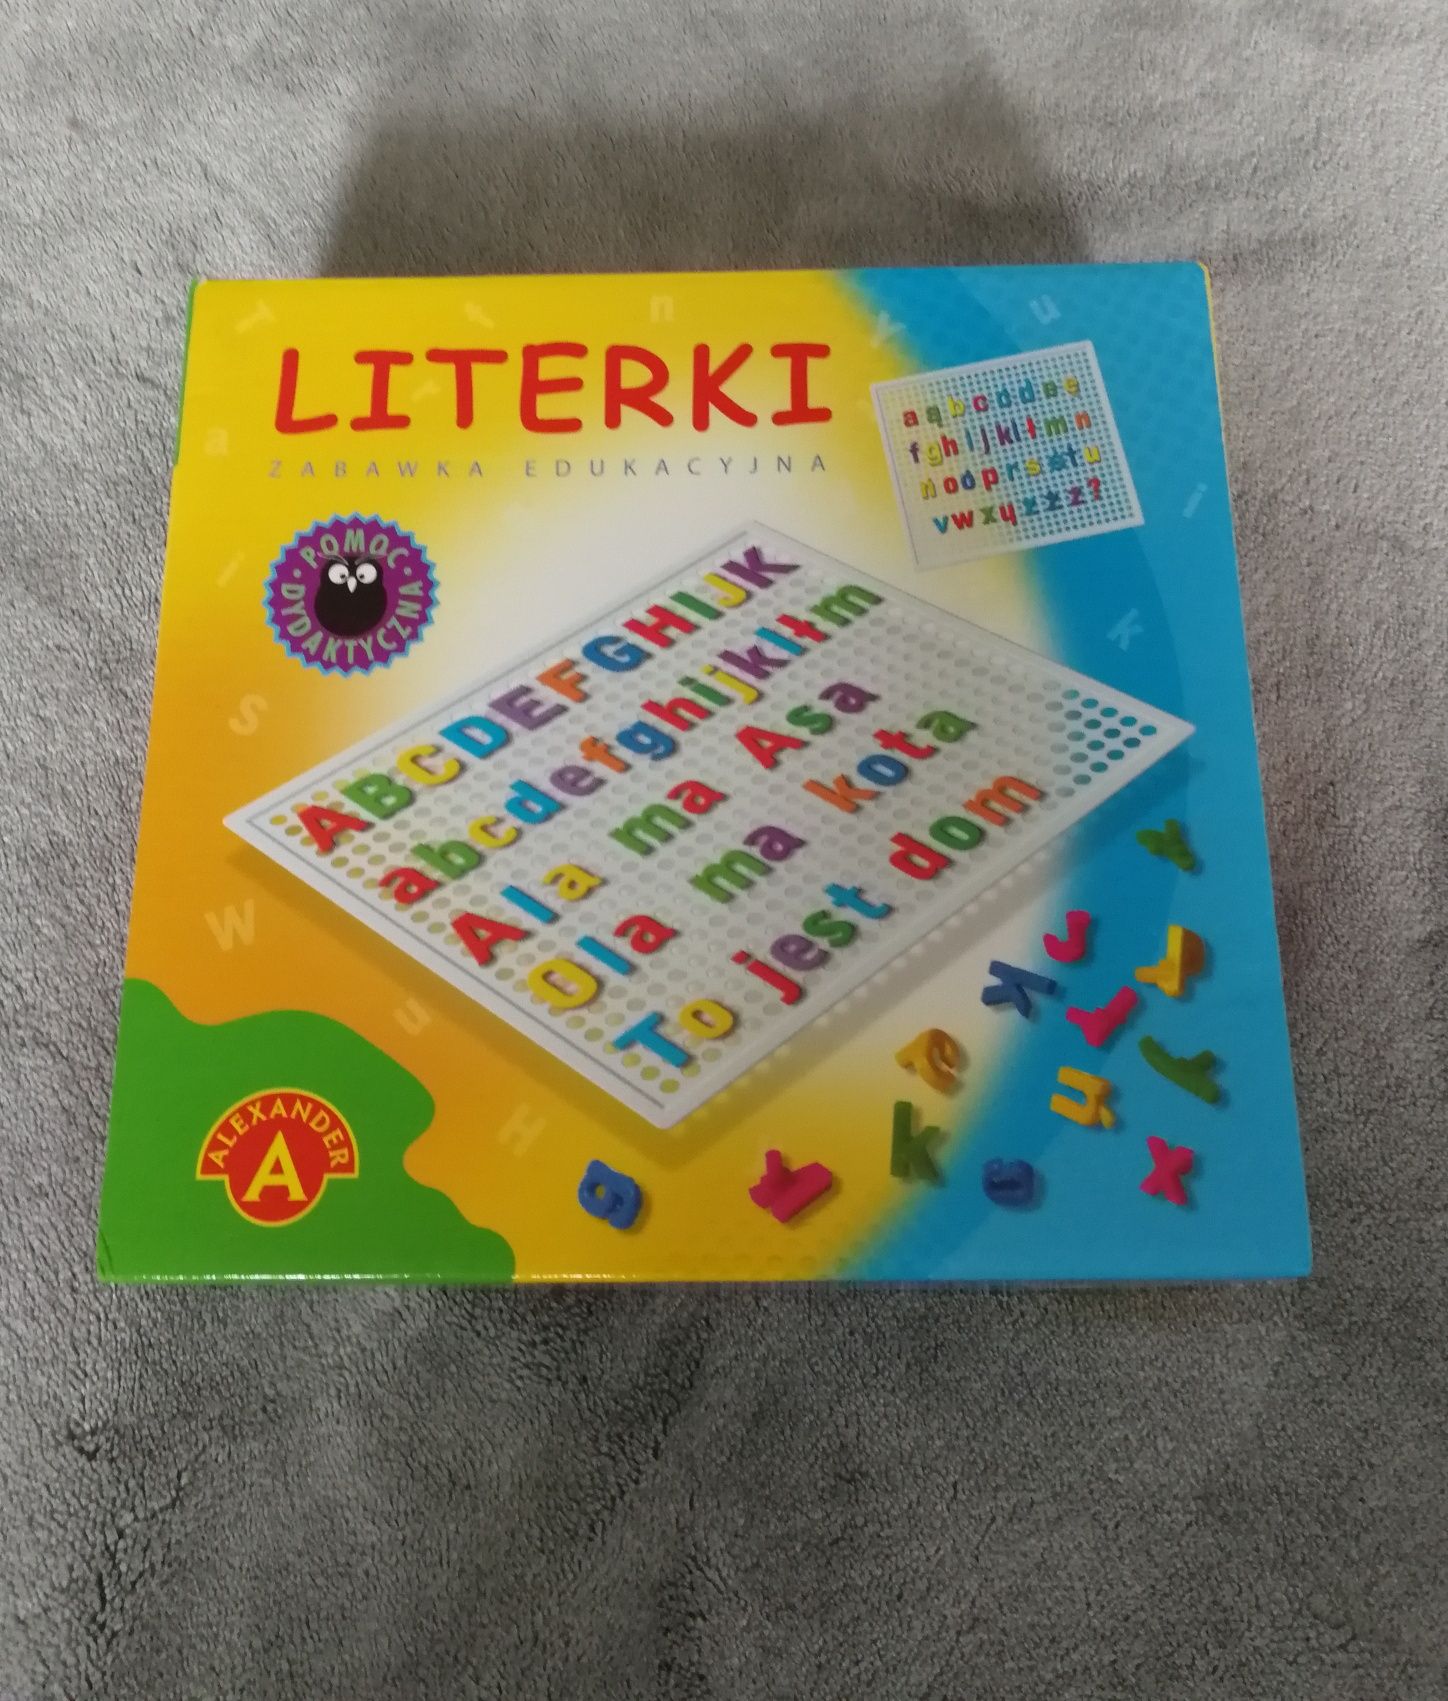 Gra edukacyjna literki, Alexander, gra logiczna słowa alfabet